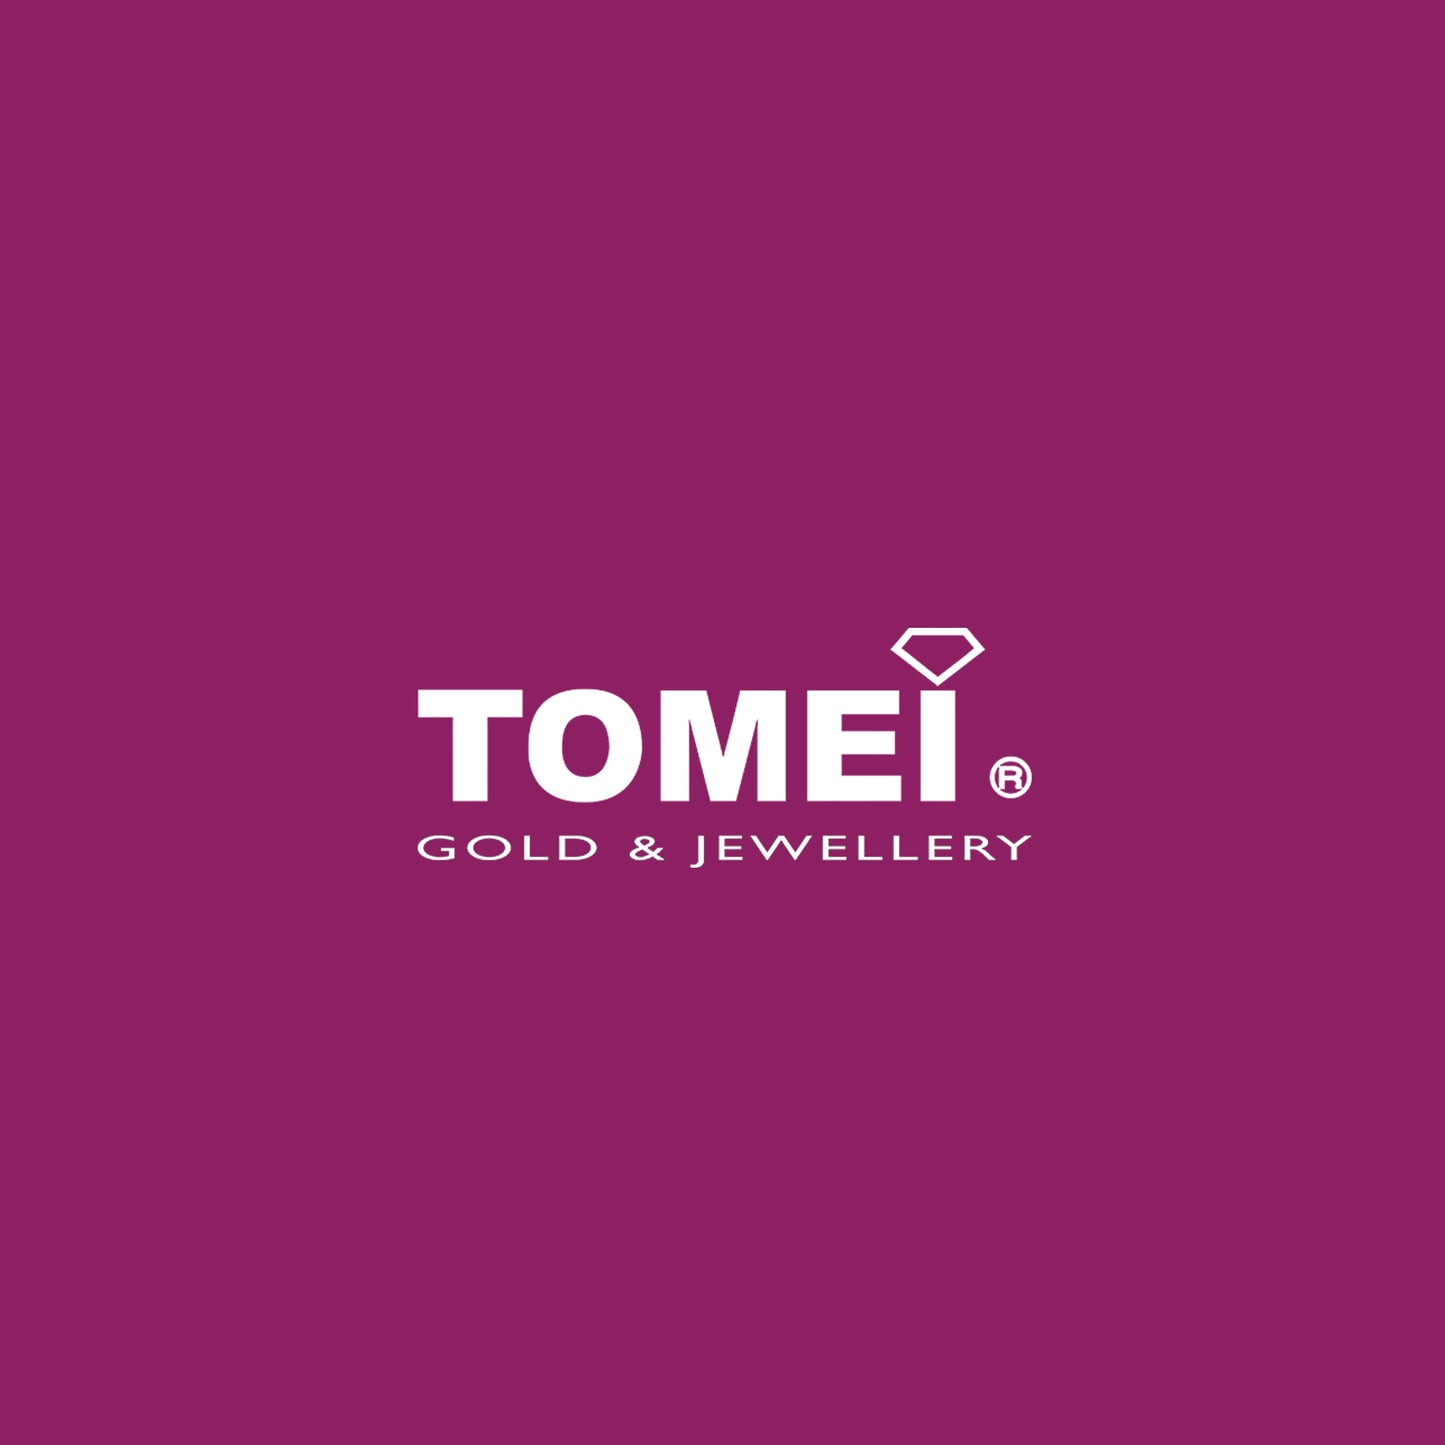 TOMEI Pendant Set, Diamond White Gold 375 & 585 (P4700)